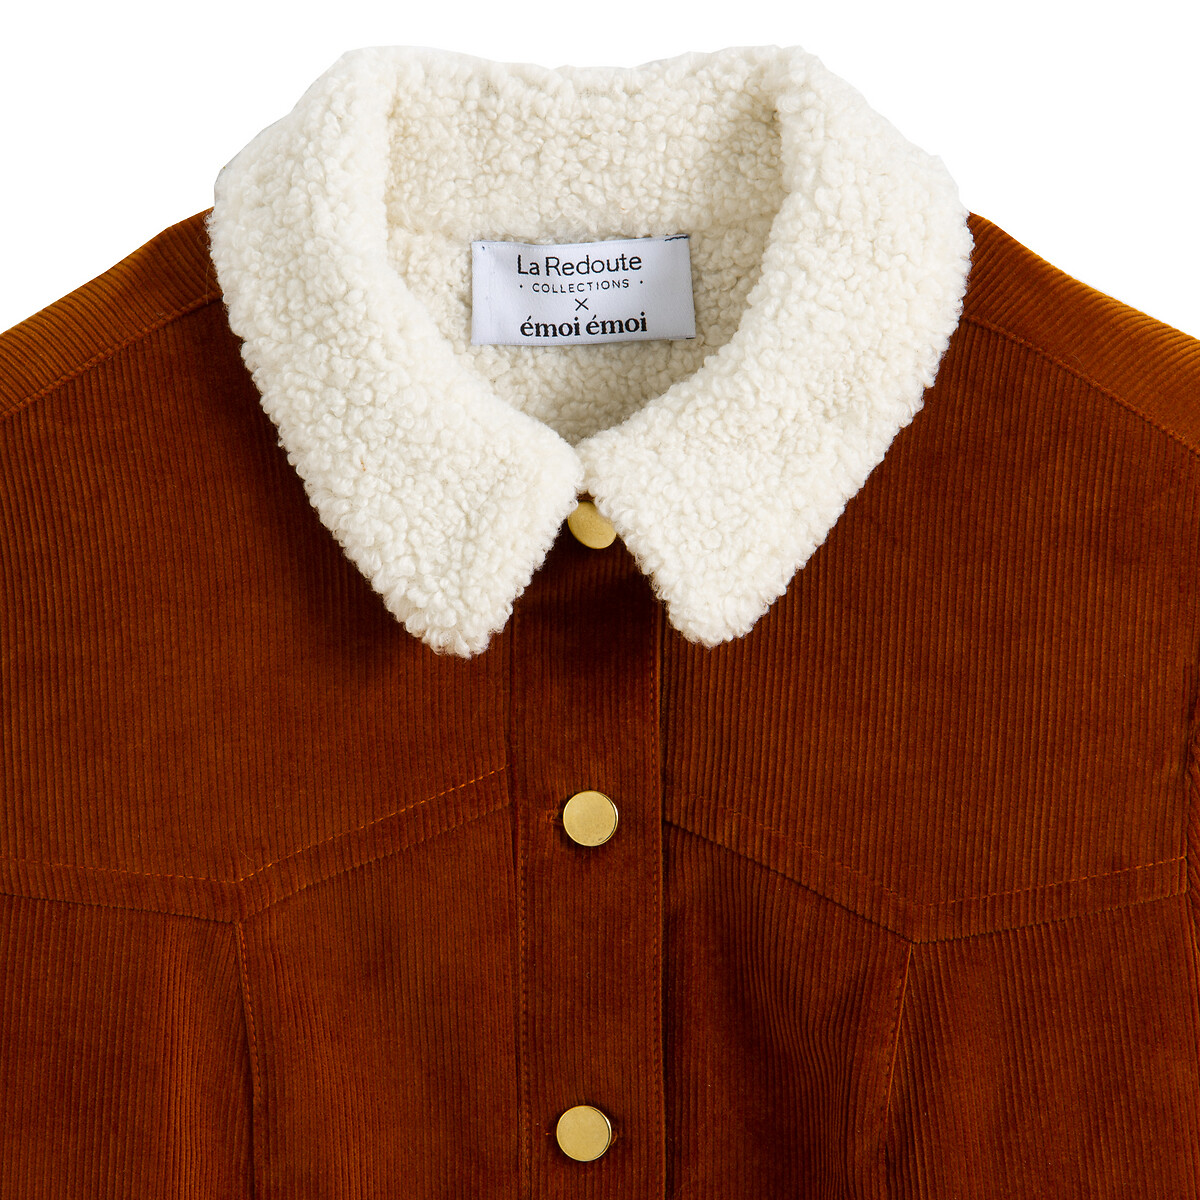 Куртка La Redoute La Redoute 44 (FR) - 50 (RUS) оранжевый, размер 44 (FR) - 50 (RUS) La Redoute 44 (FR) - 50 (RUS) оранжевый - фото 2